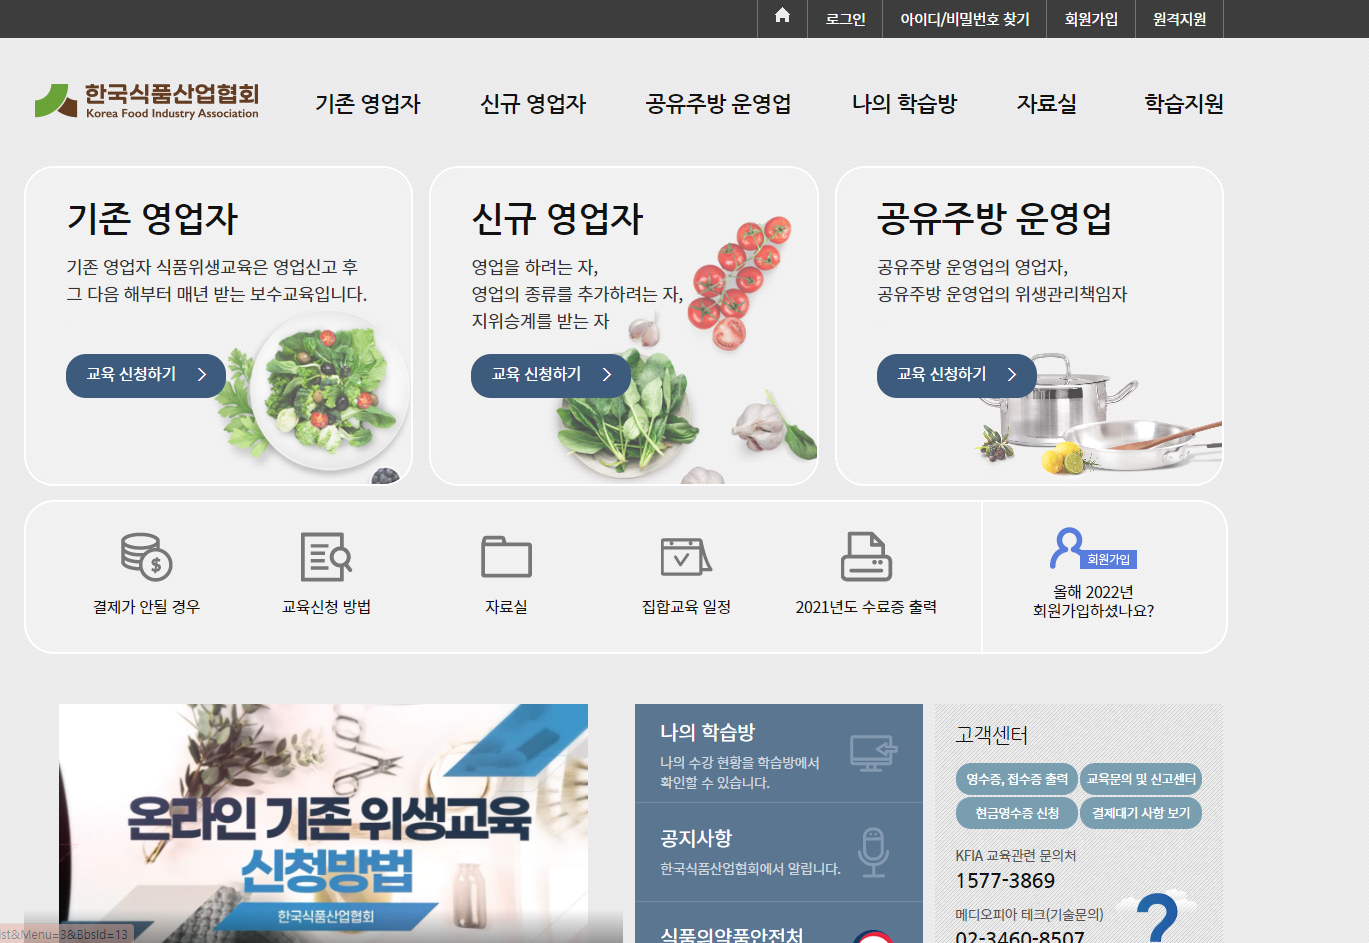 한국식품산업협회 - 수입식품 영업허가 신고